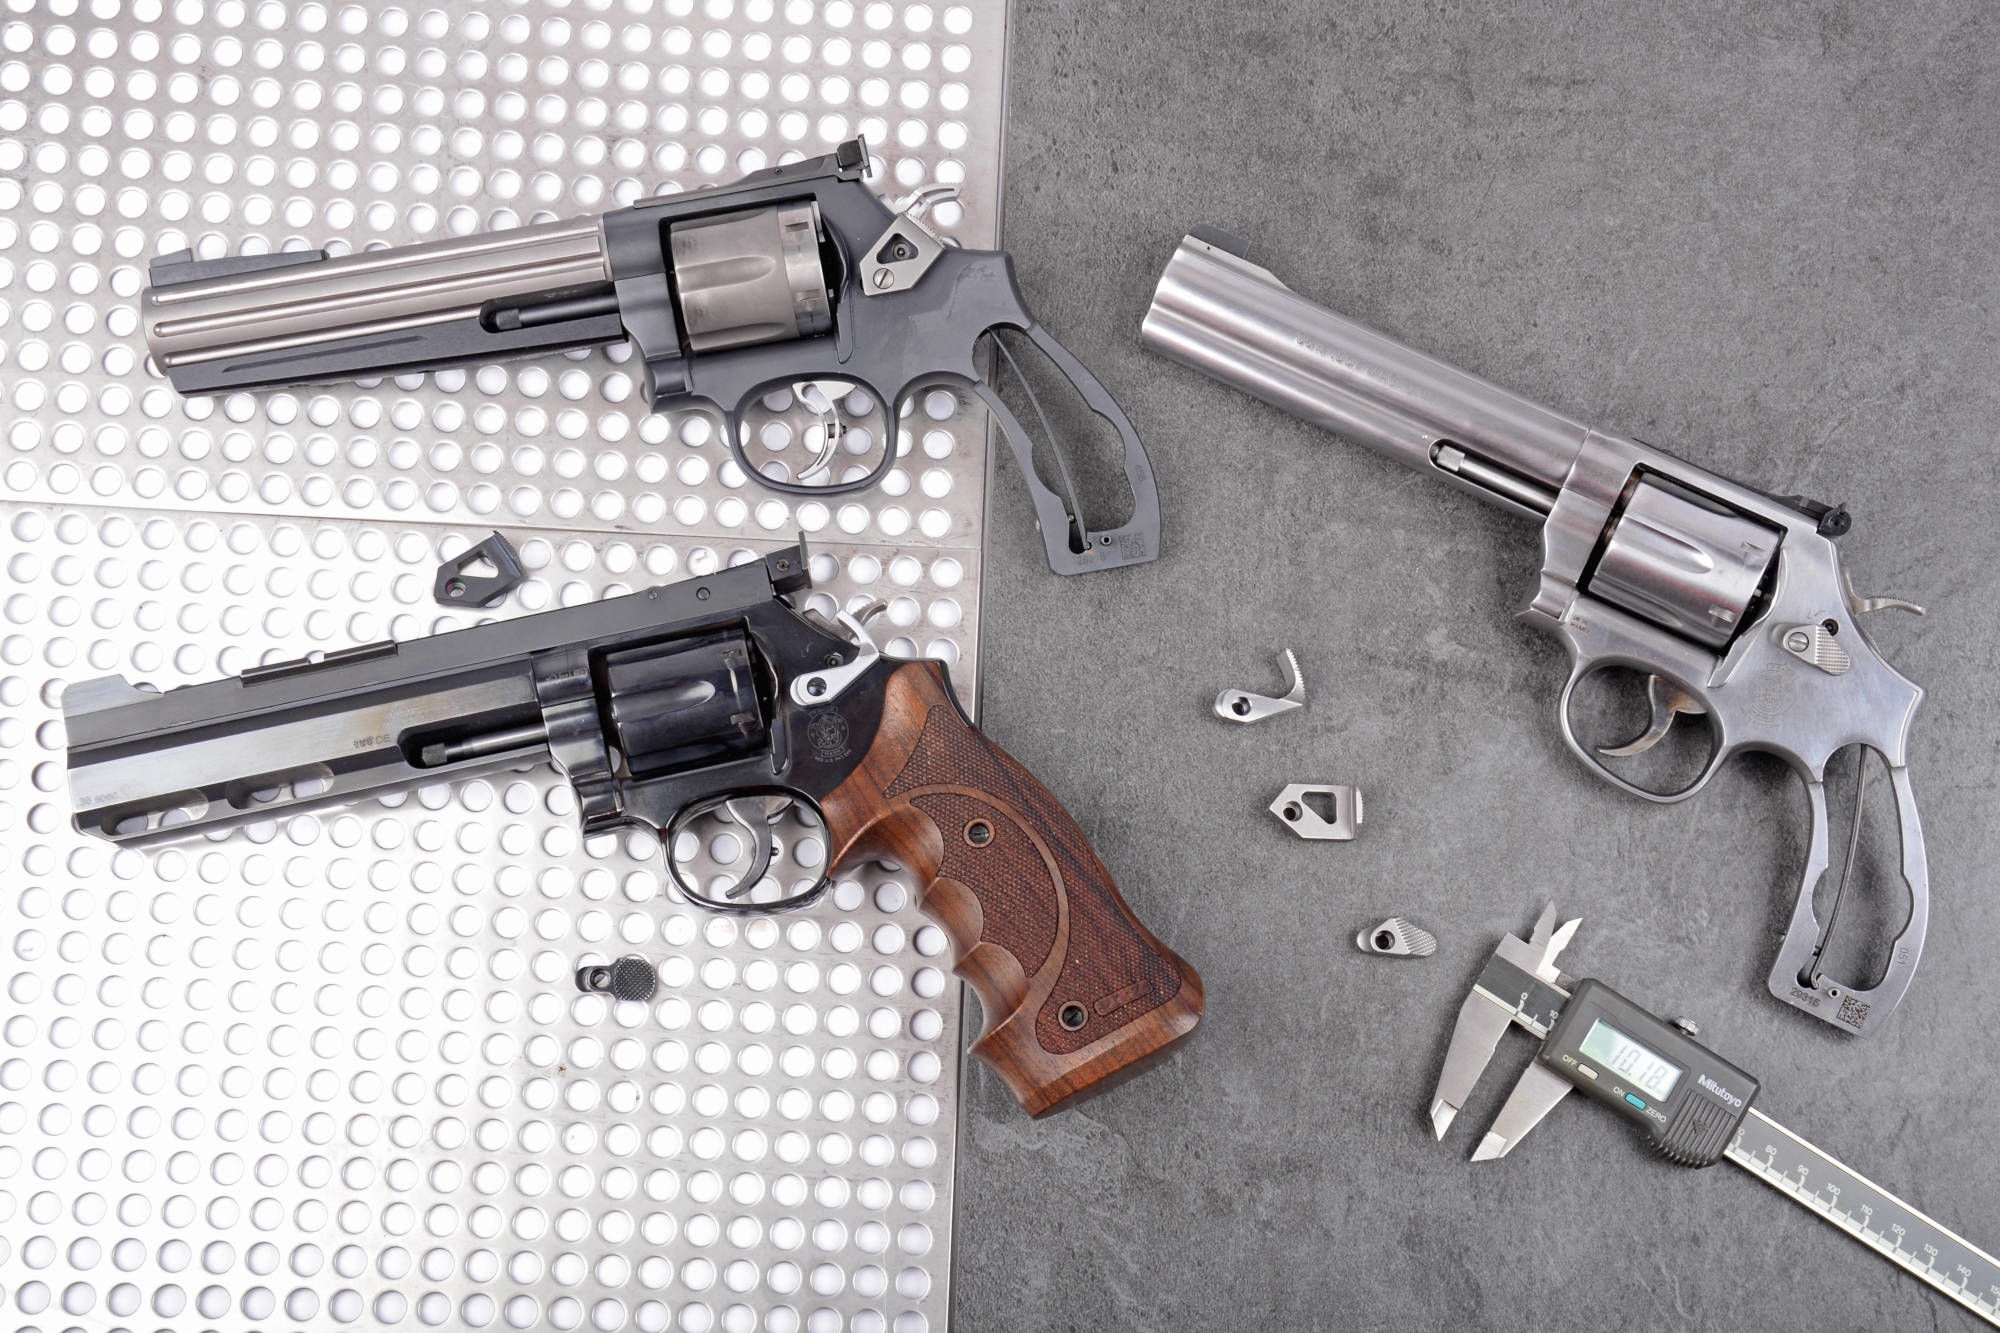 SLIKA 9. Smith&Wesson modeli 586 i 686 su posluili kao osnova za nadogradnju rafiniranog takmiarskog oruja.jpg